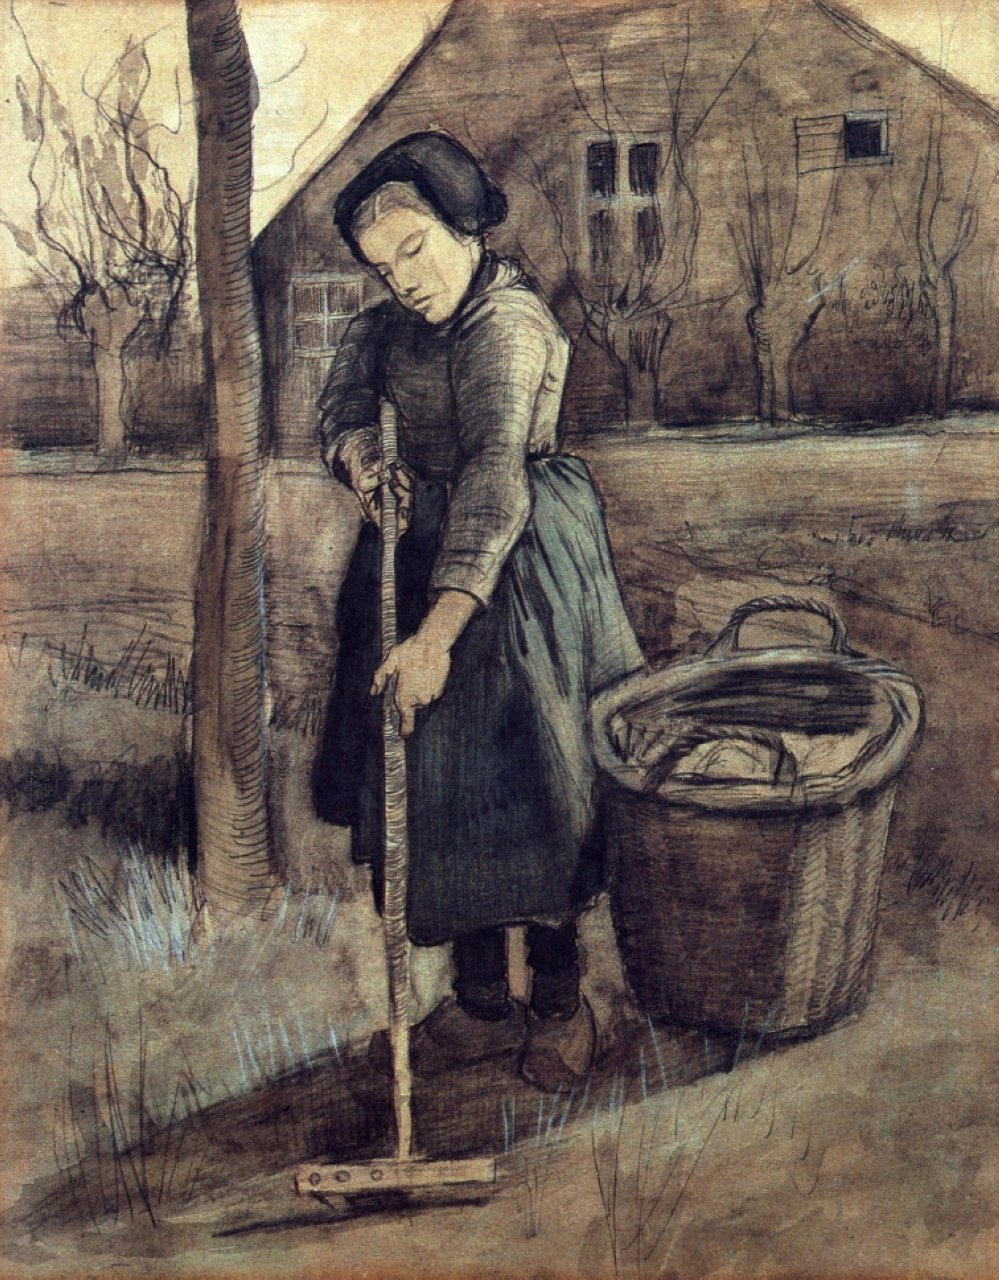 A Girl Raking, 1881